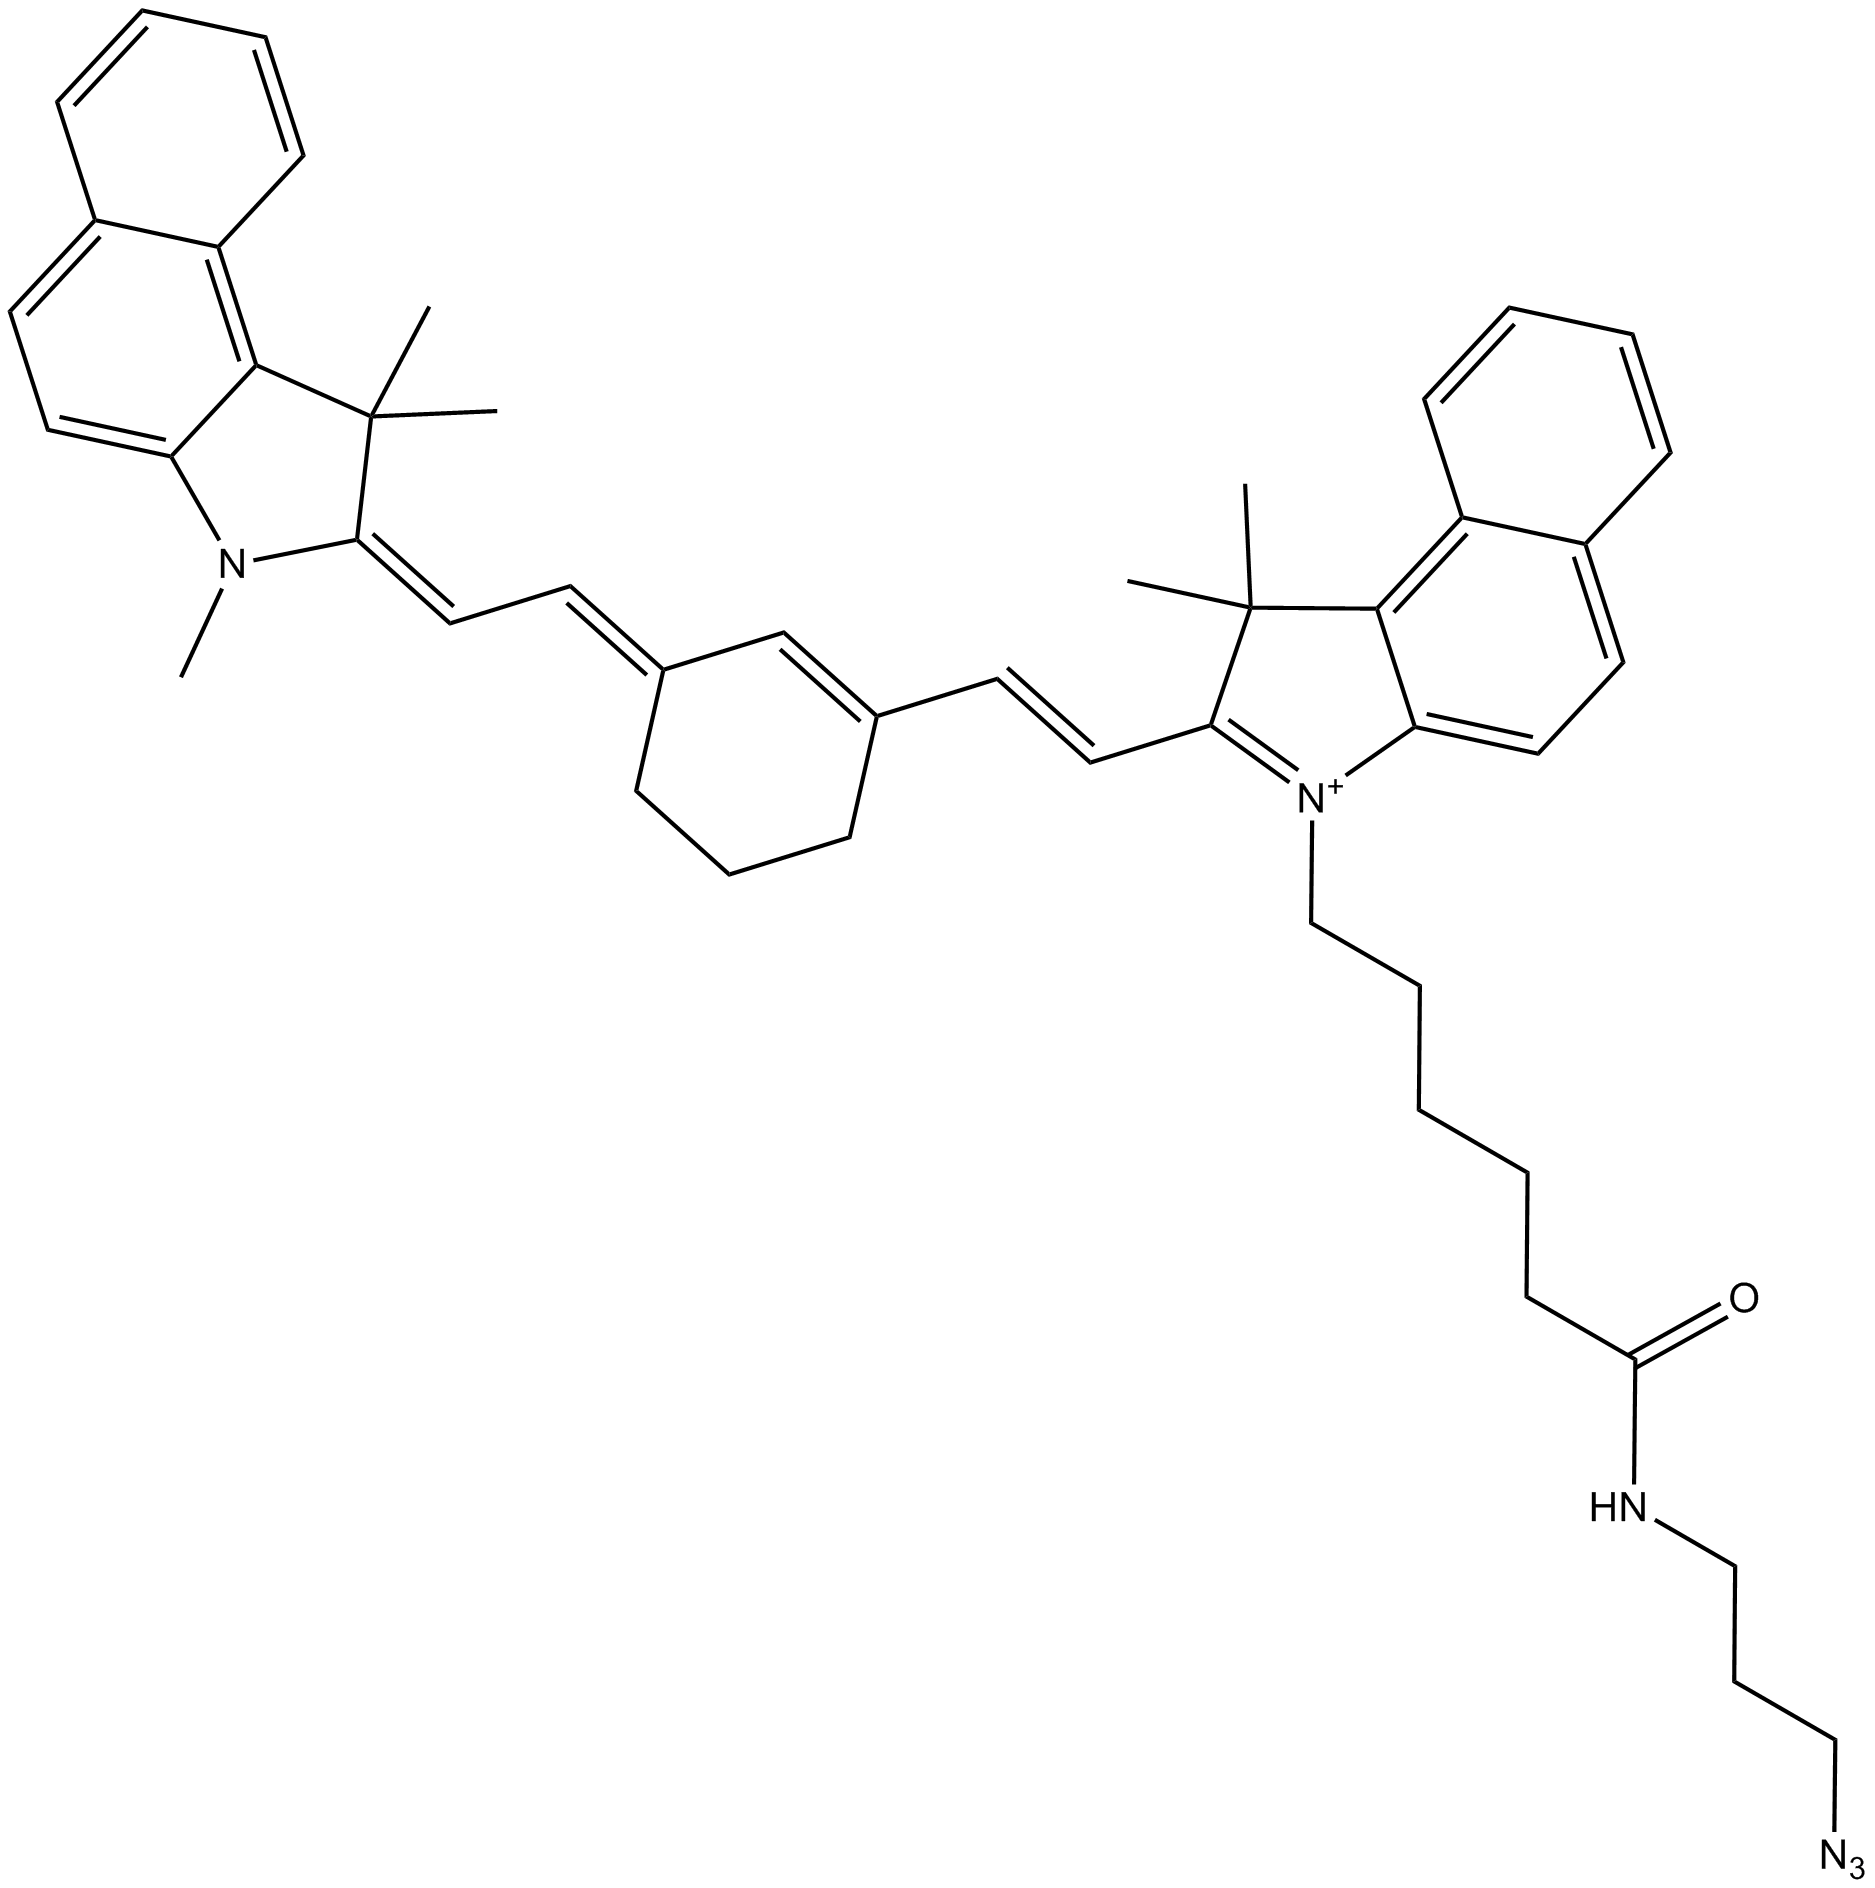 Cy7.5 azide (non-sulfonated)